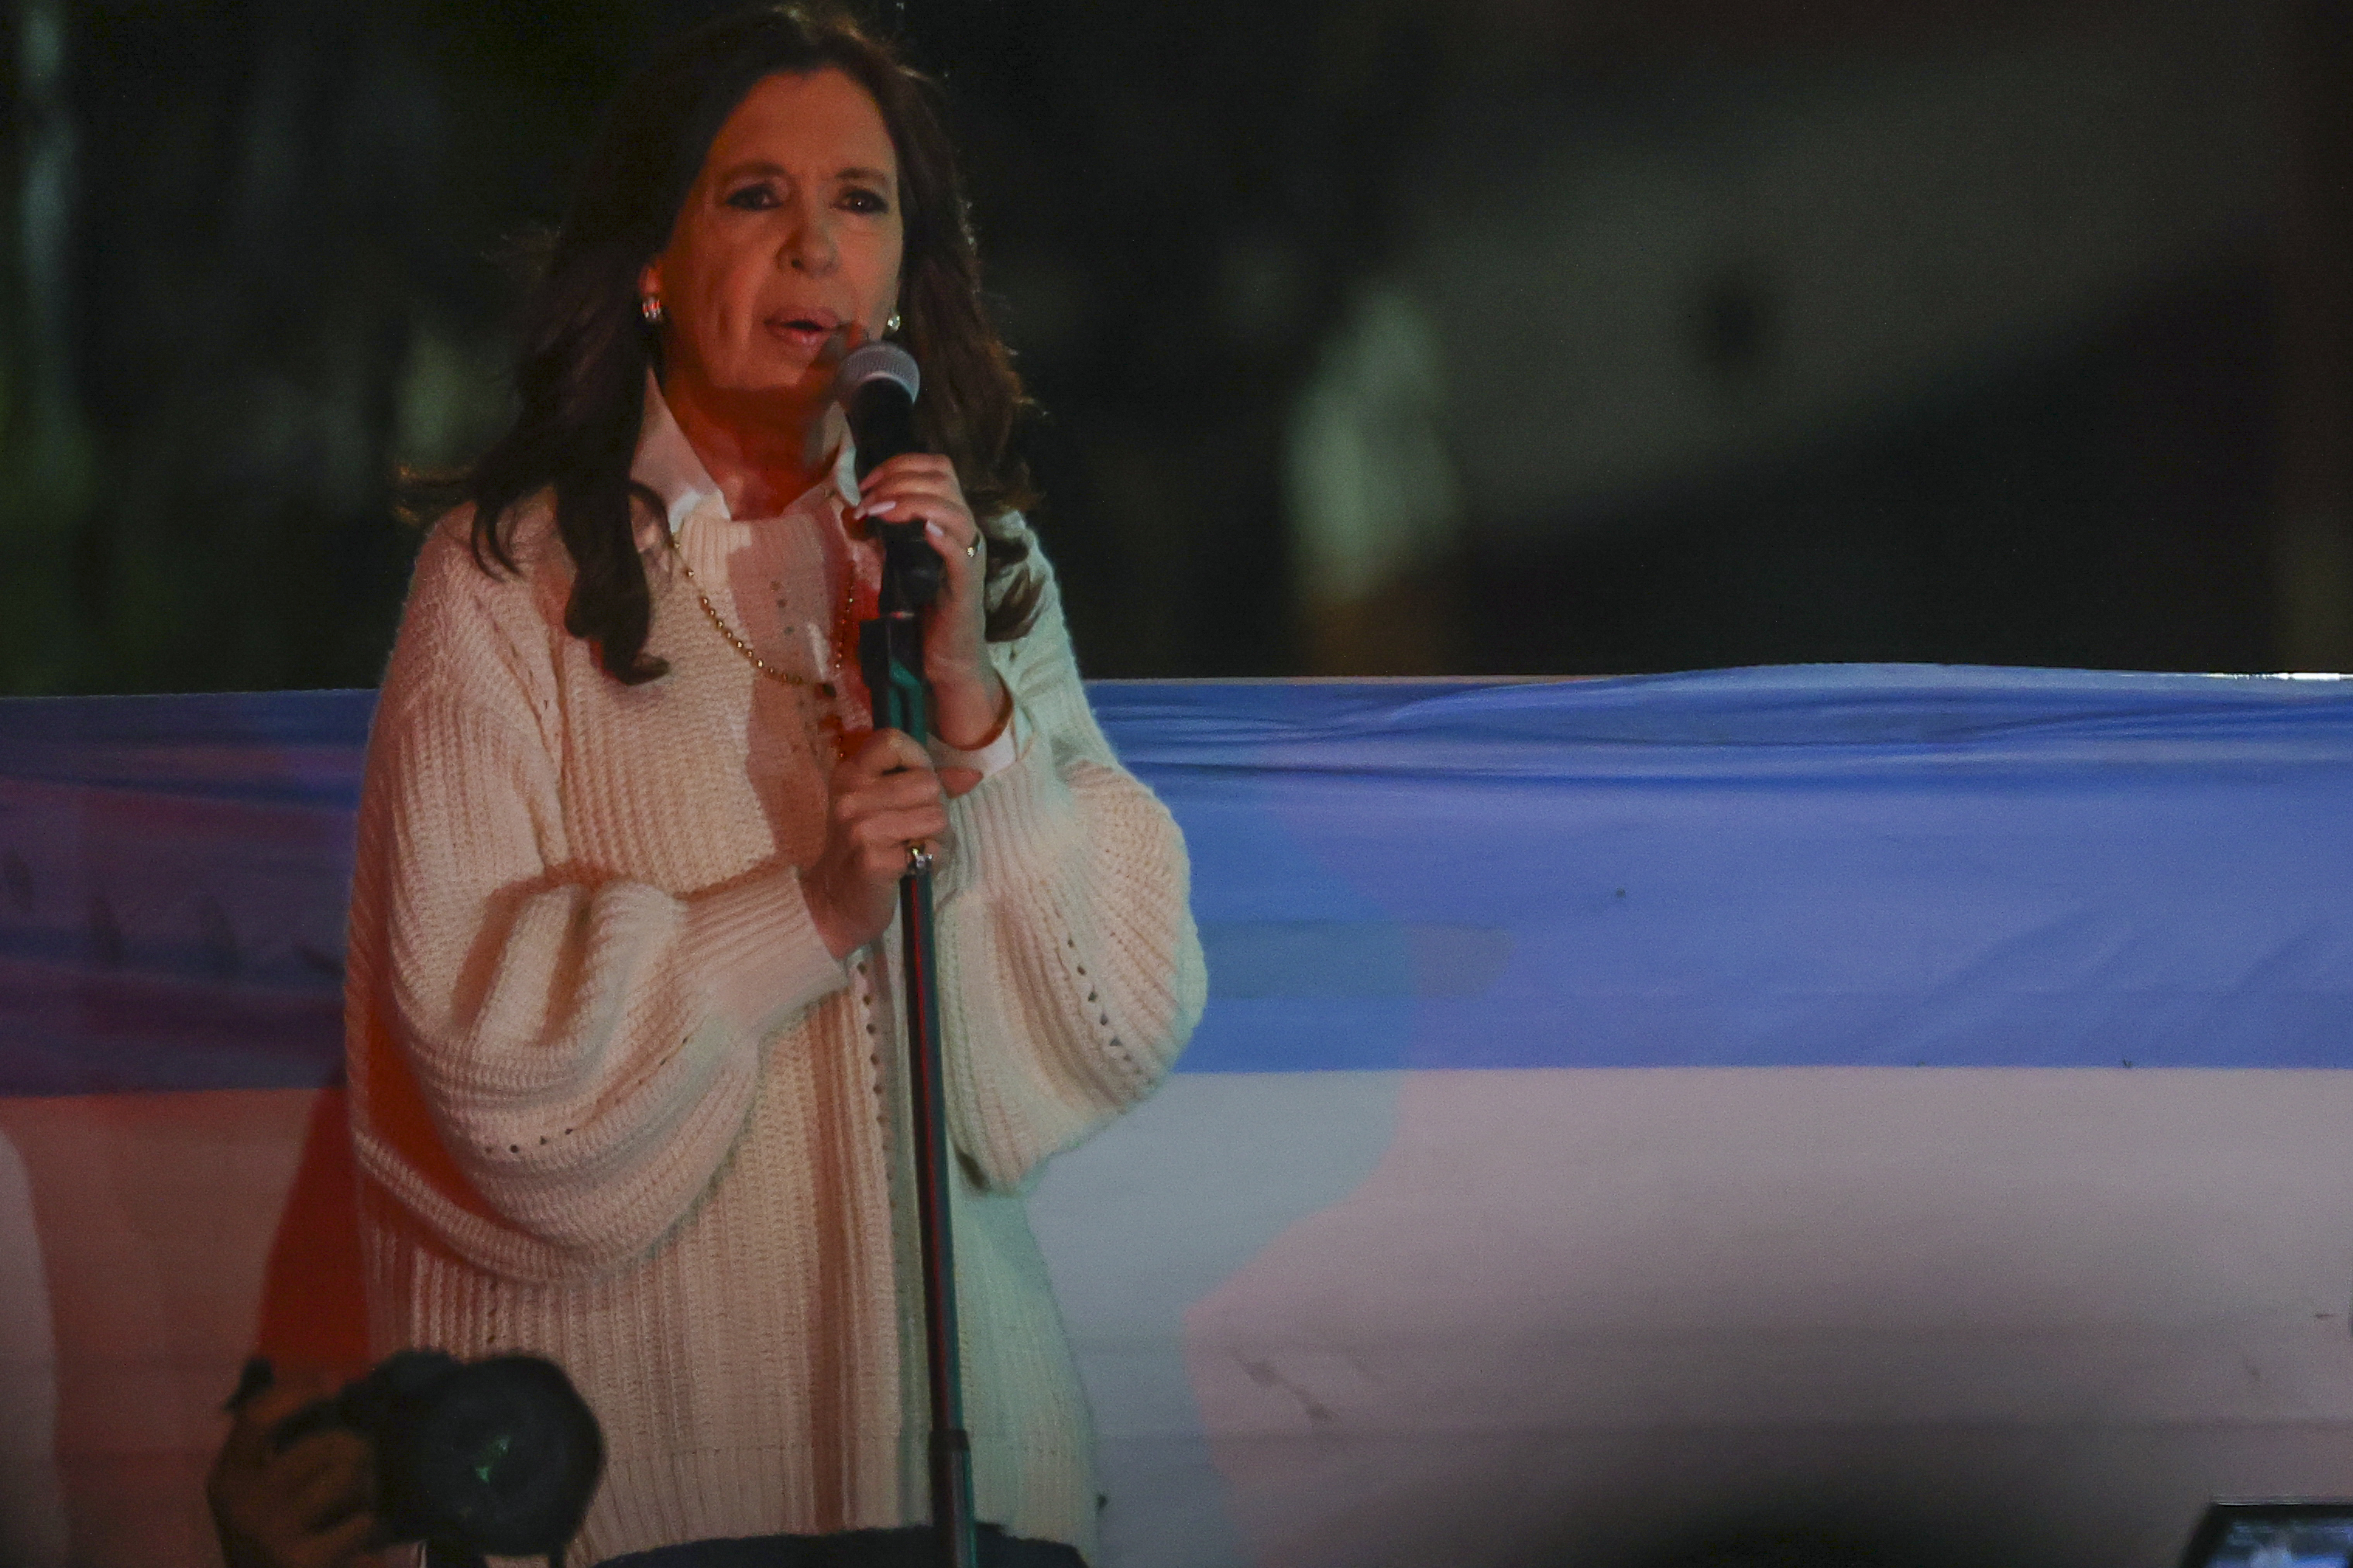 Cristina Fernández dijo que su atentado fue “orquestado” por supuestos empresarios ligados a Macri